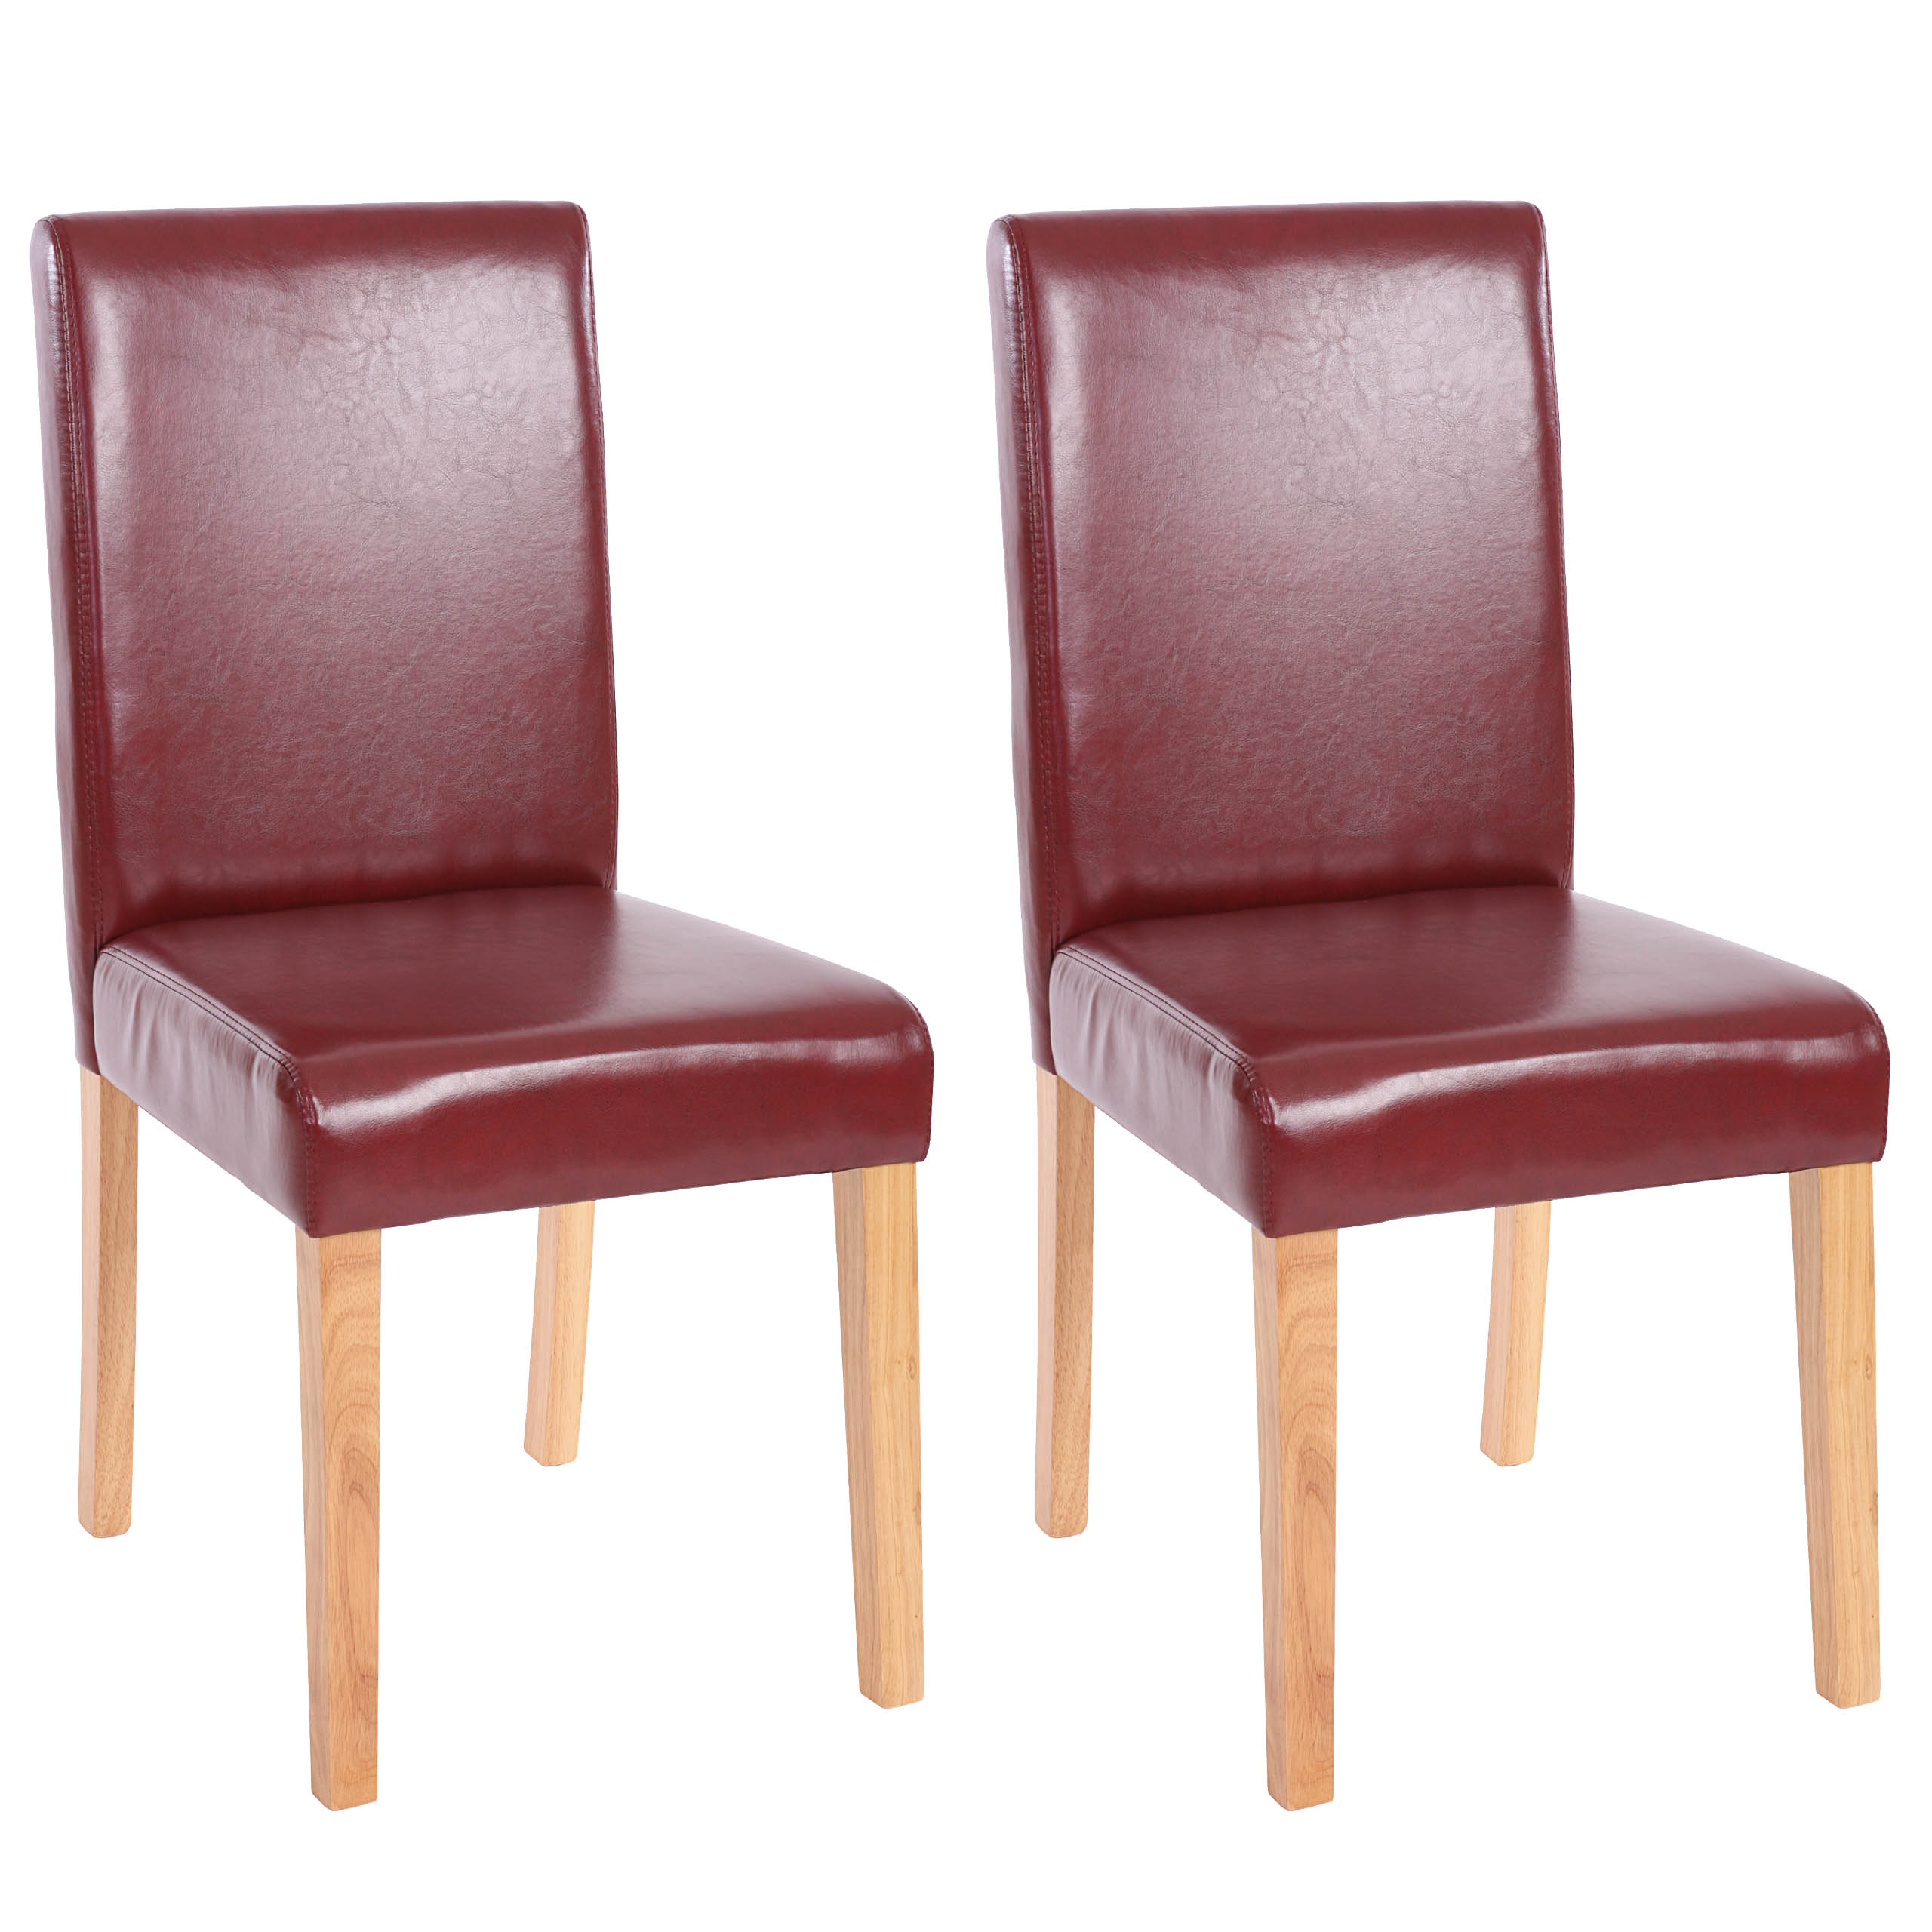 2x silla de comedor silla sillón Littau piel sintética crema helle piernas